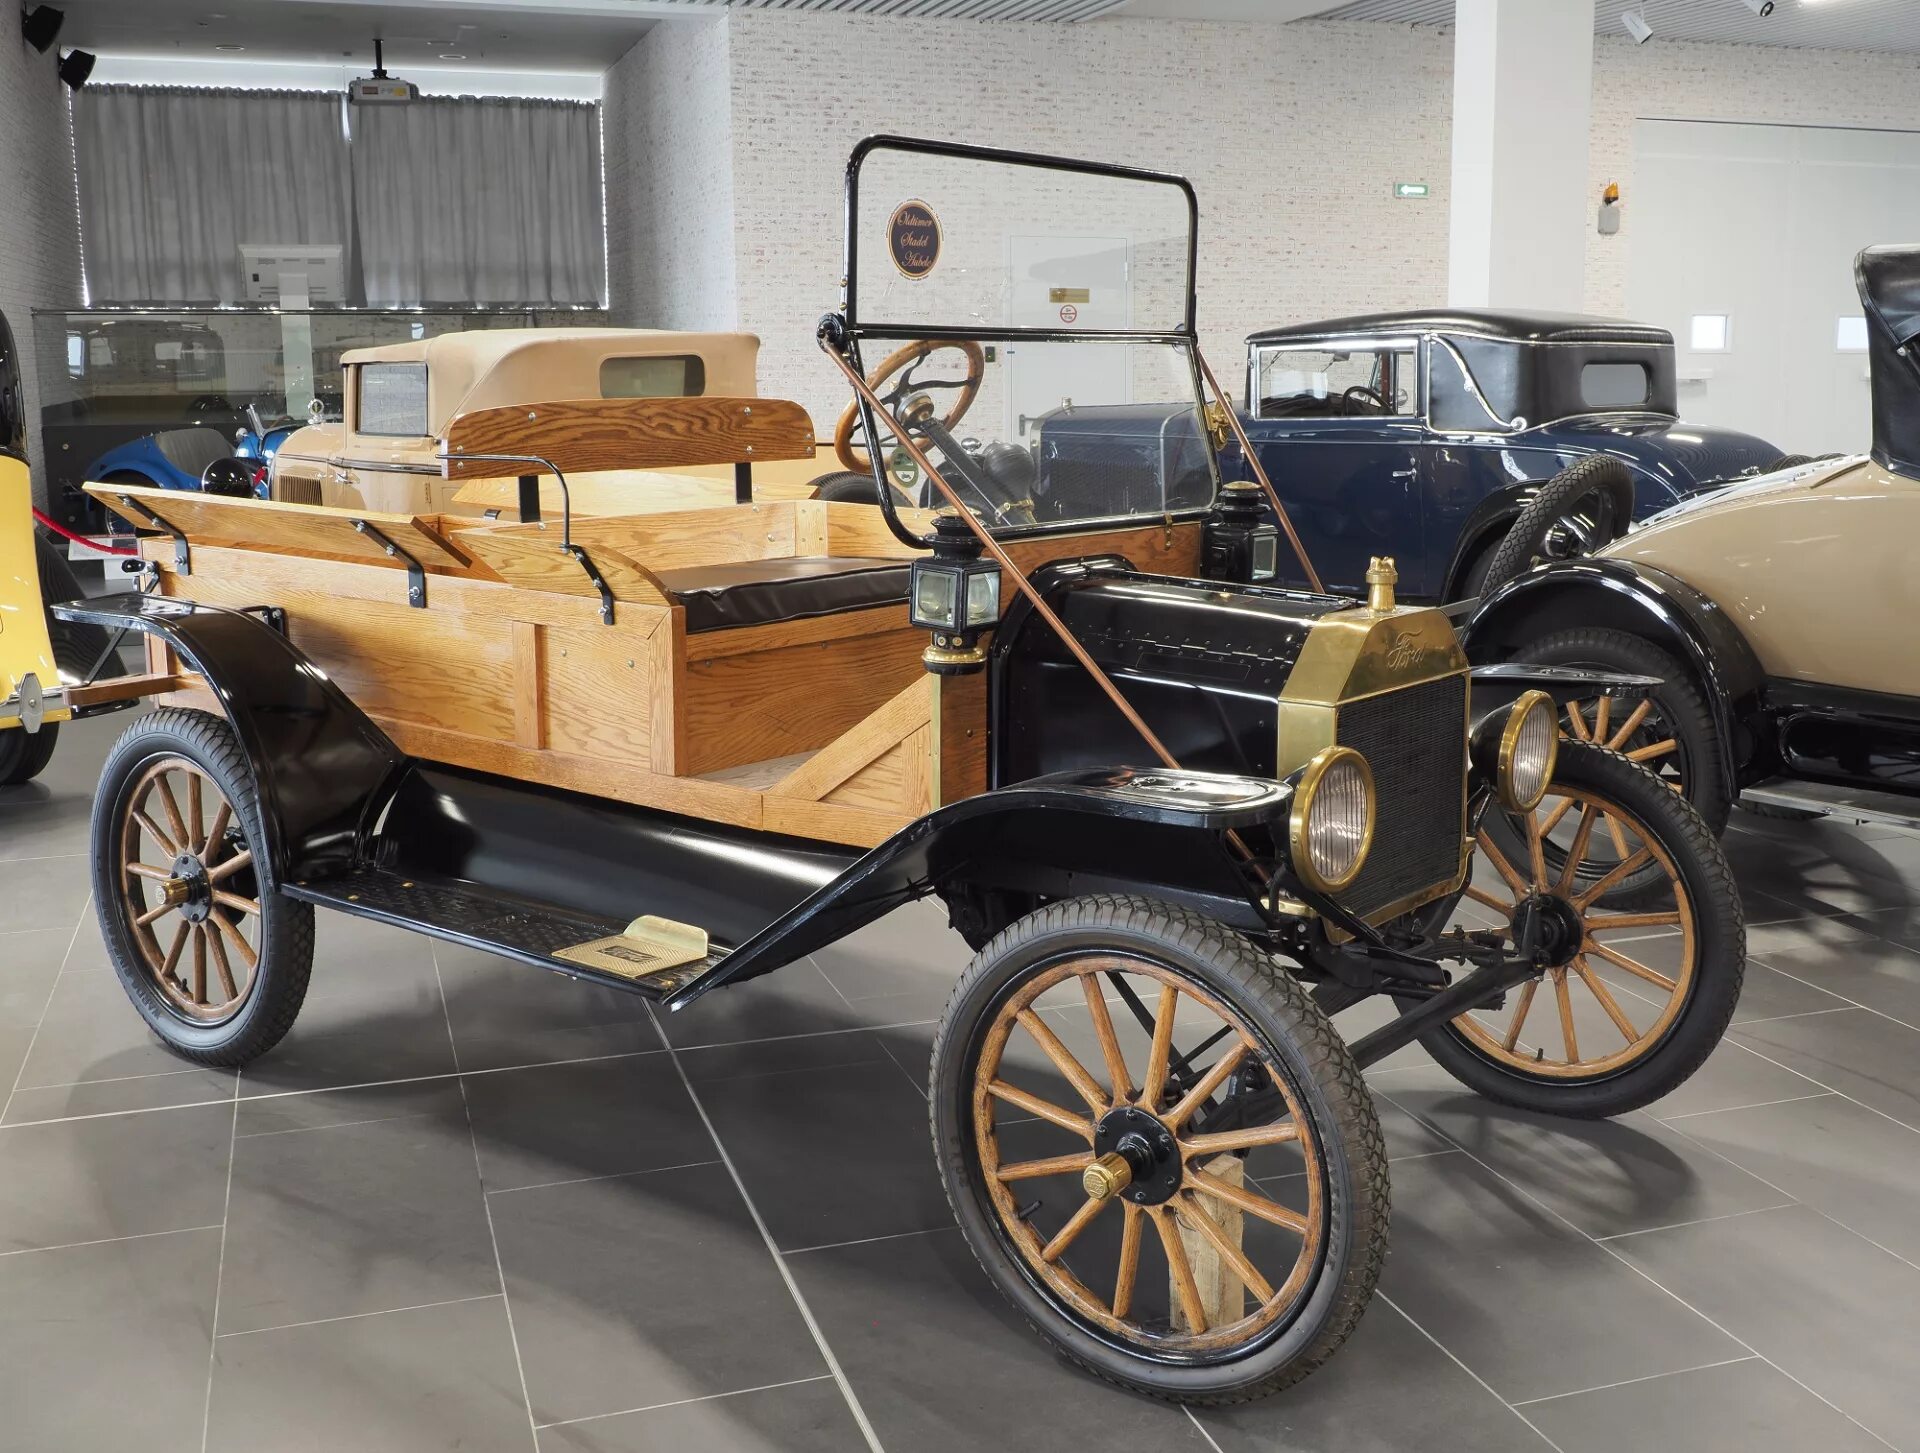 Автомобиль 18. Машина Гейльмана 19 век. Первый автомобиль 19 века. Форд конца 19 века. Автомобили конца 19 века.